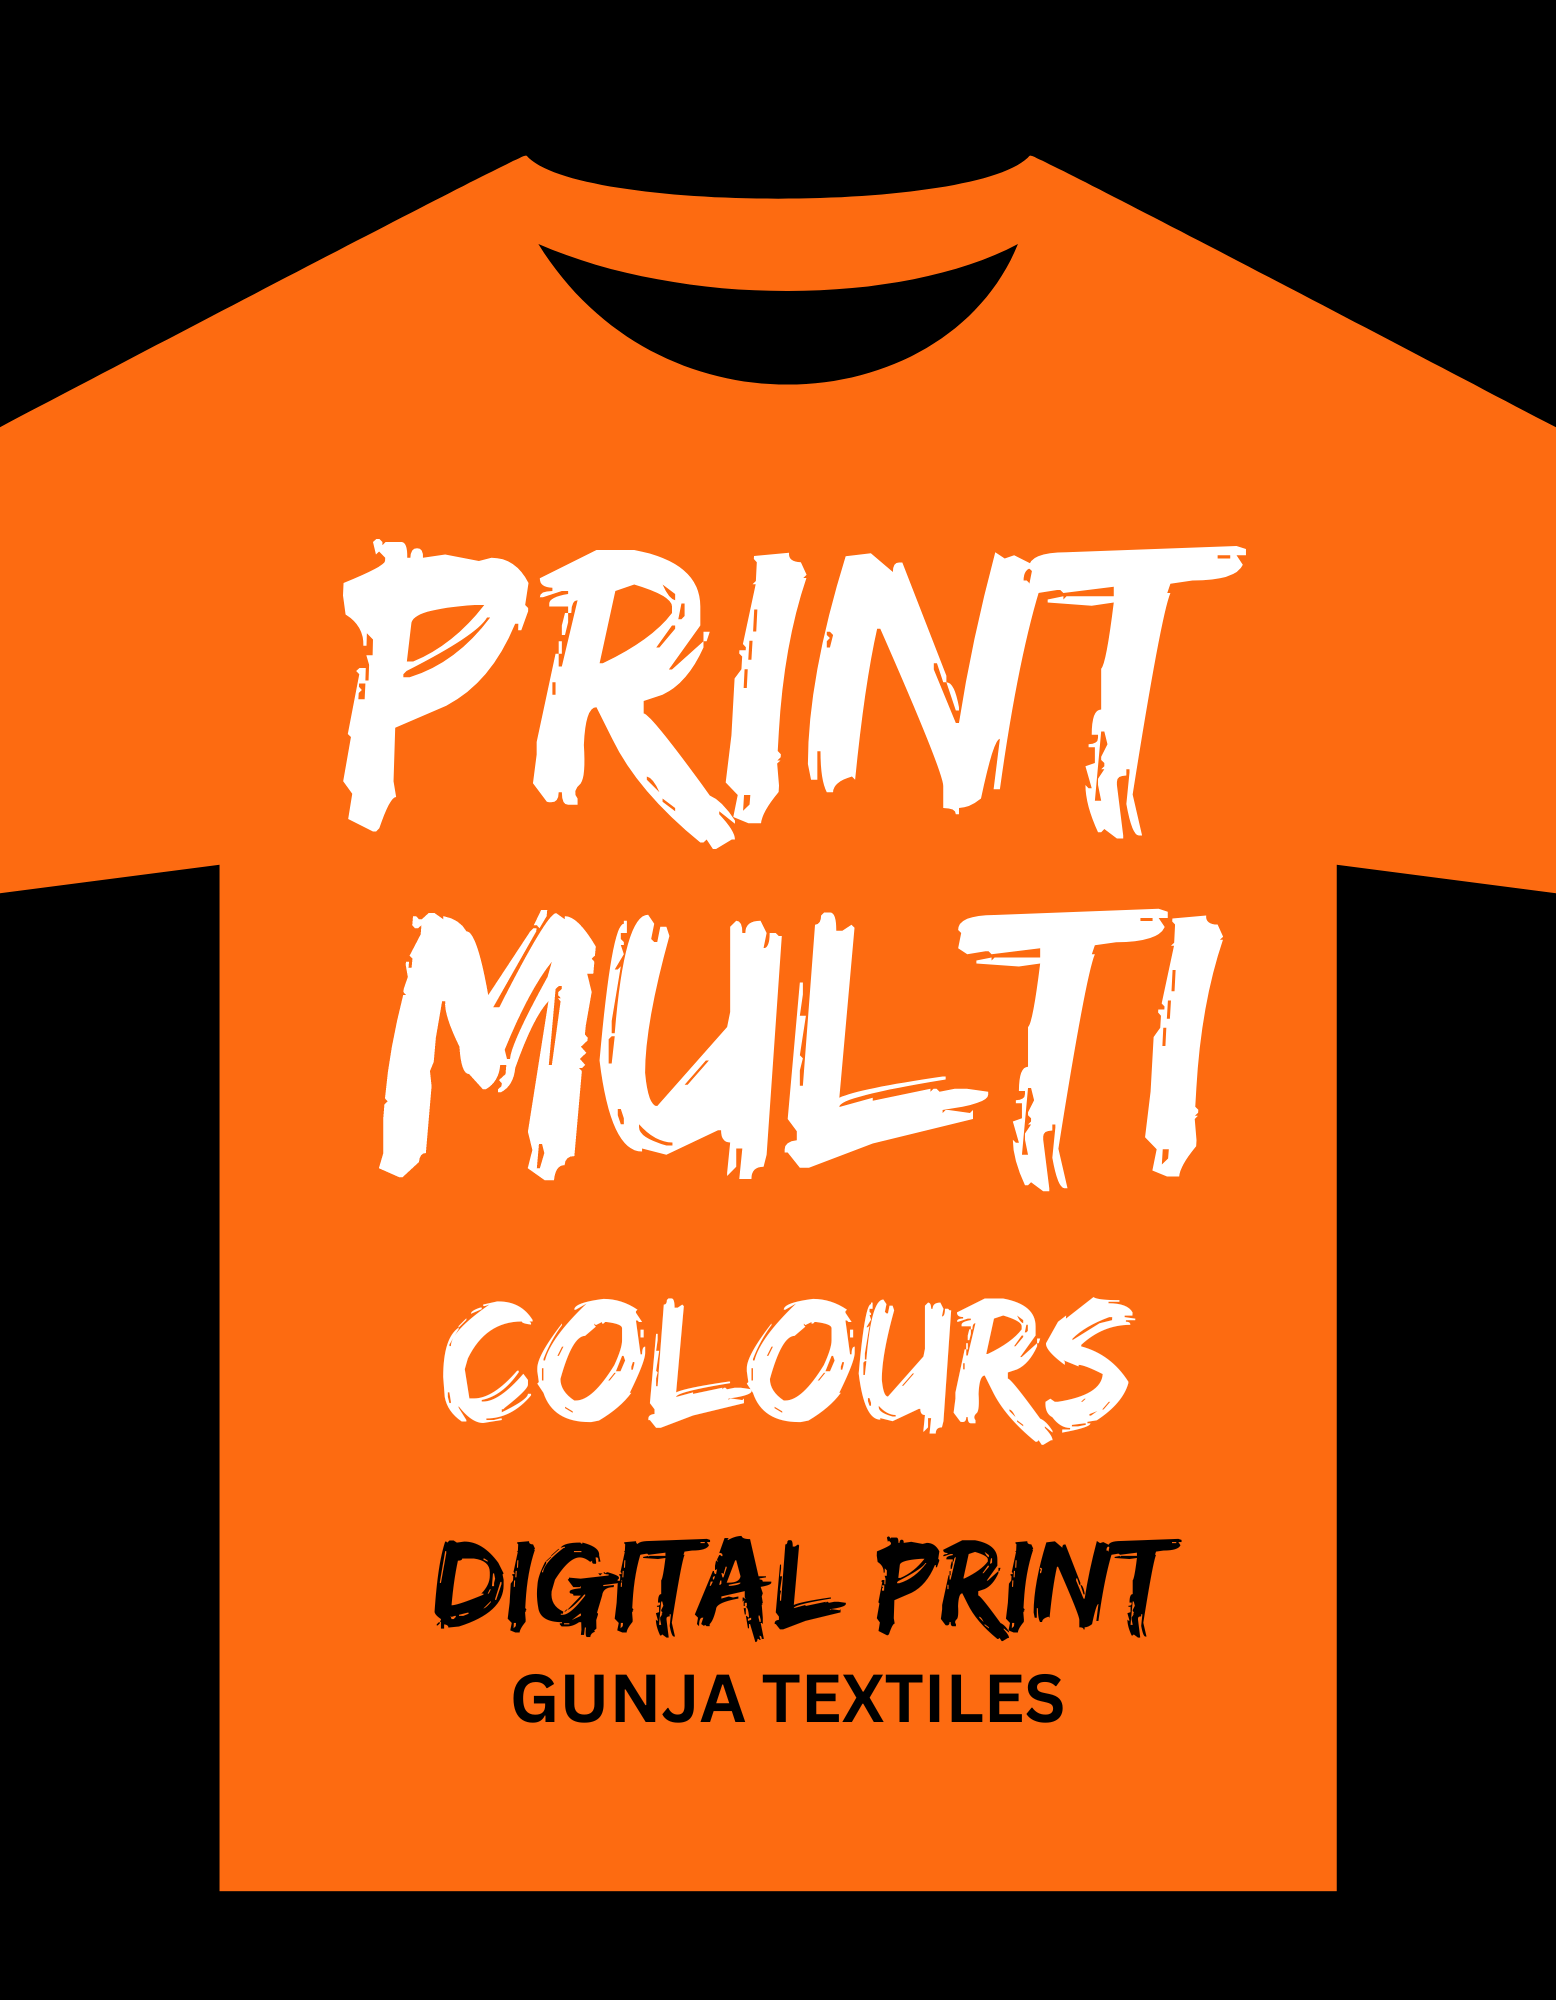 digital printing on tshirts